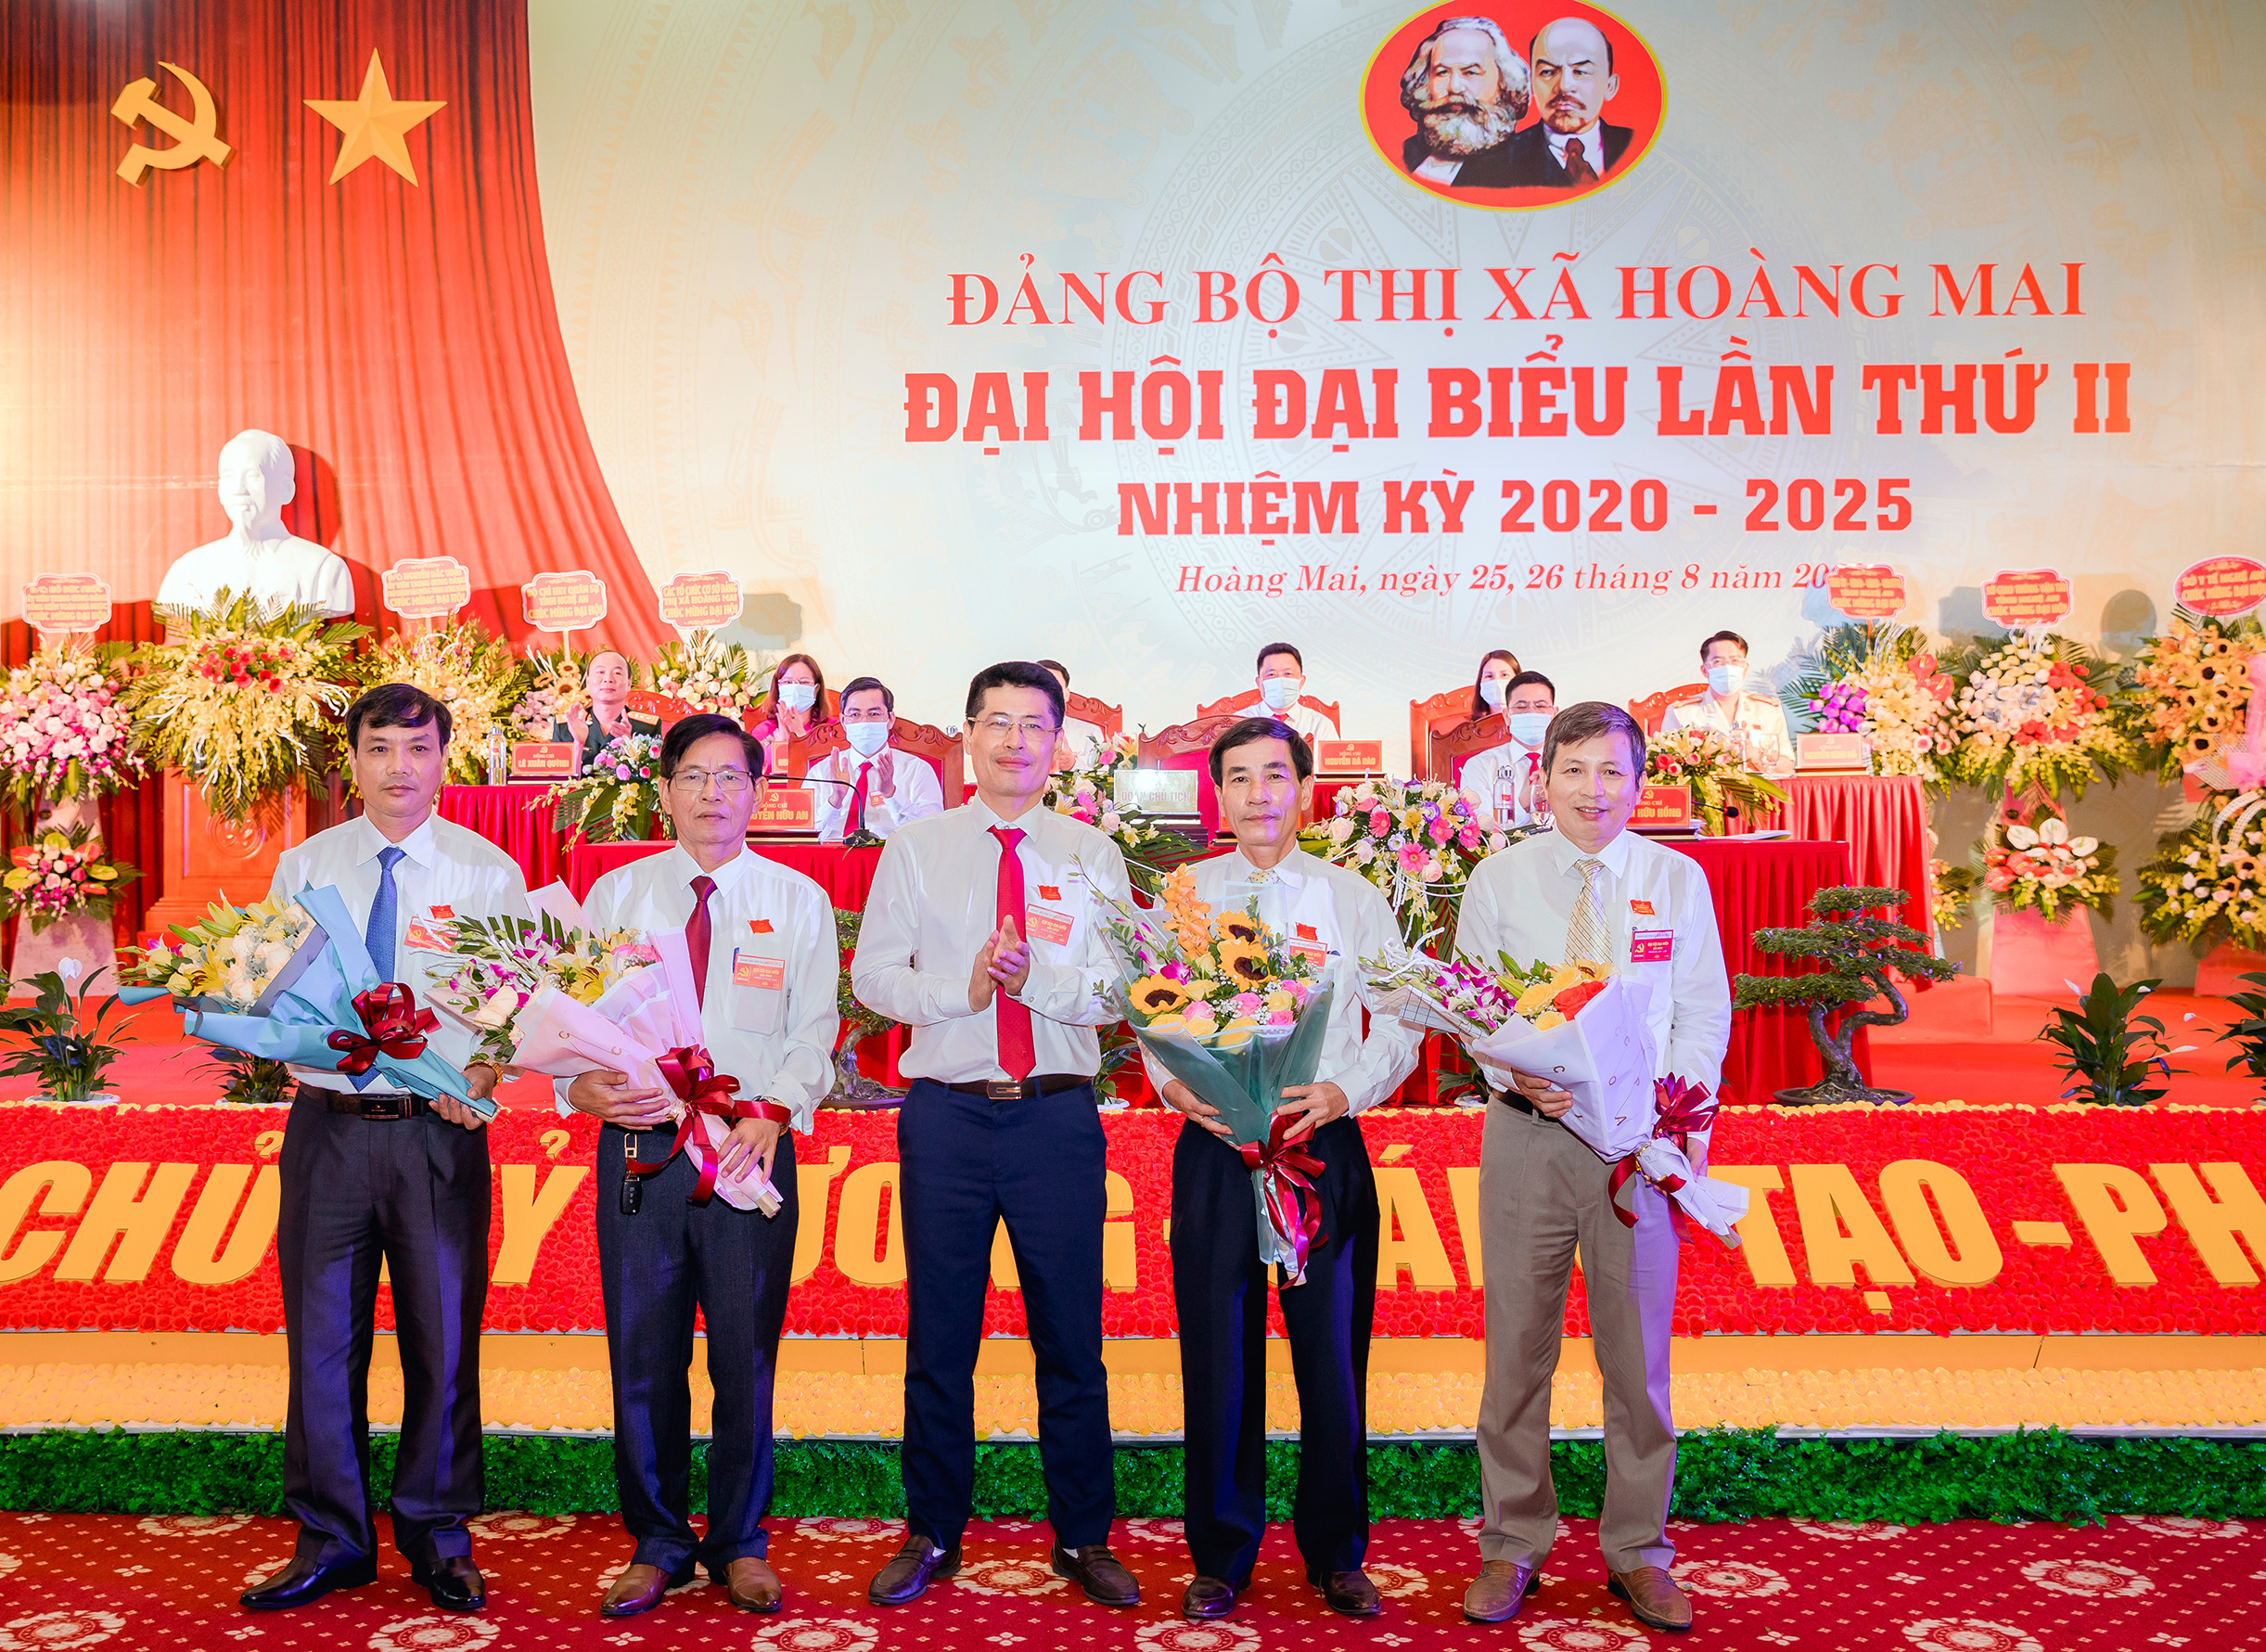 Tặng hoa cho các đồng chí không tham gia Ban chấp hành Đảng bộ thị xã Hoàng Mai nhiệm kỳ 2020-2025. Ảnh: Thanh Lê